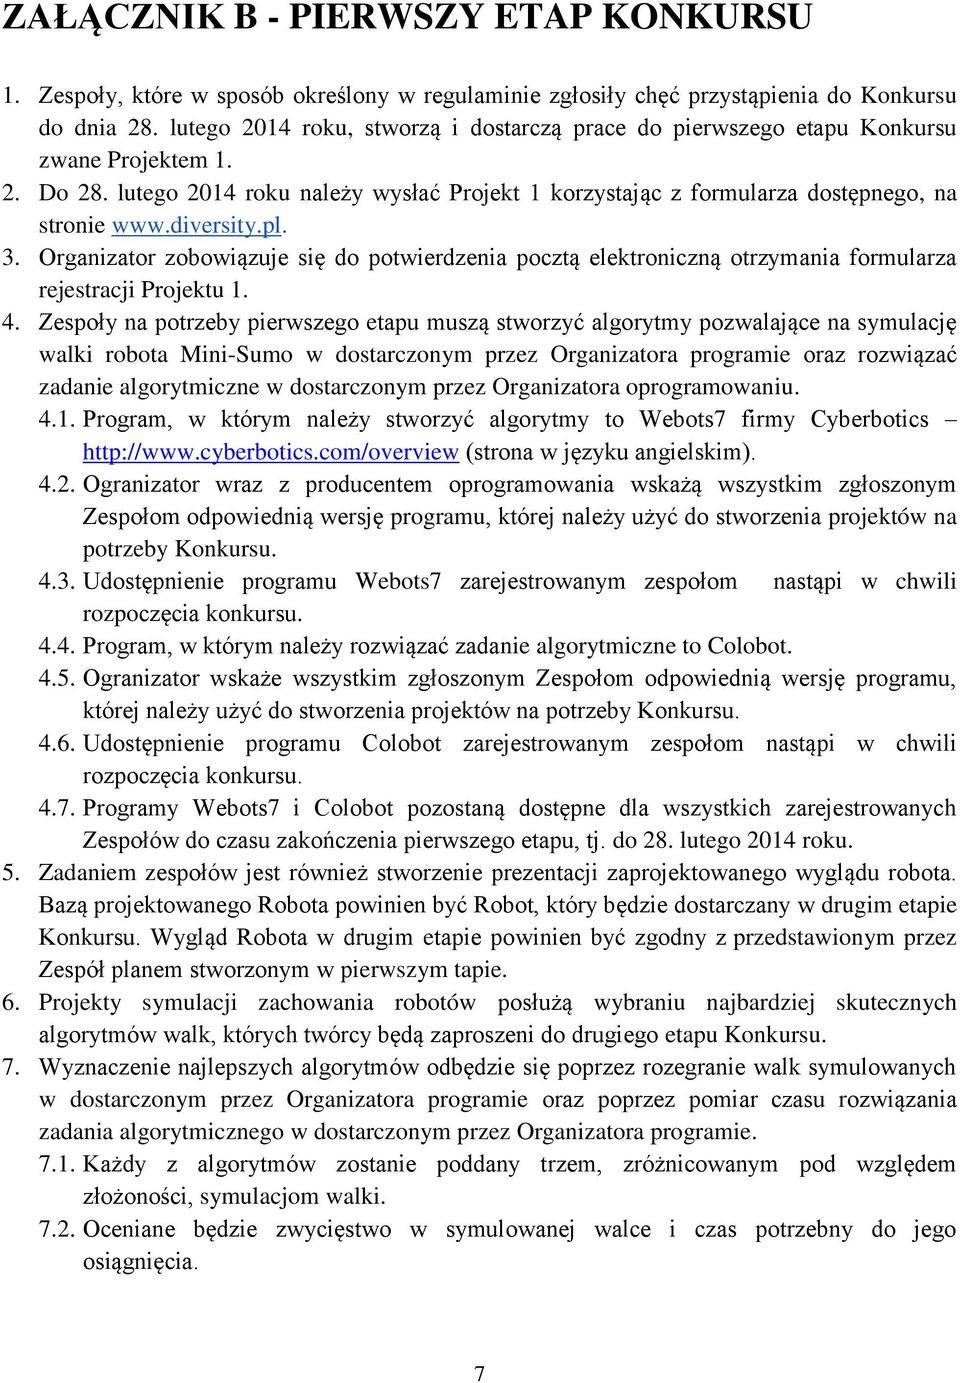 diversity.pl. 3. Organizator zobowiązuje się do potwierdzenia pocztą elektroniczną otrzymania formularza rejestracji Projektu 1. 4.